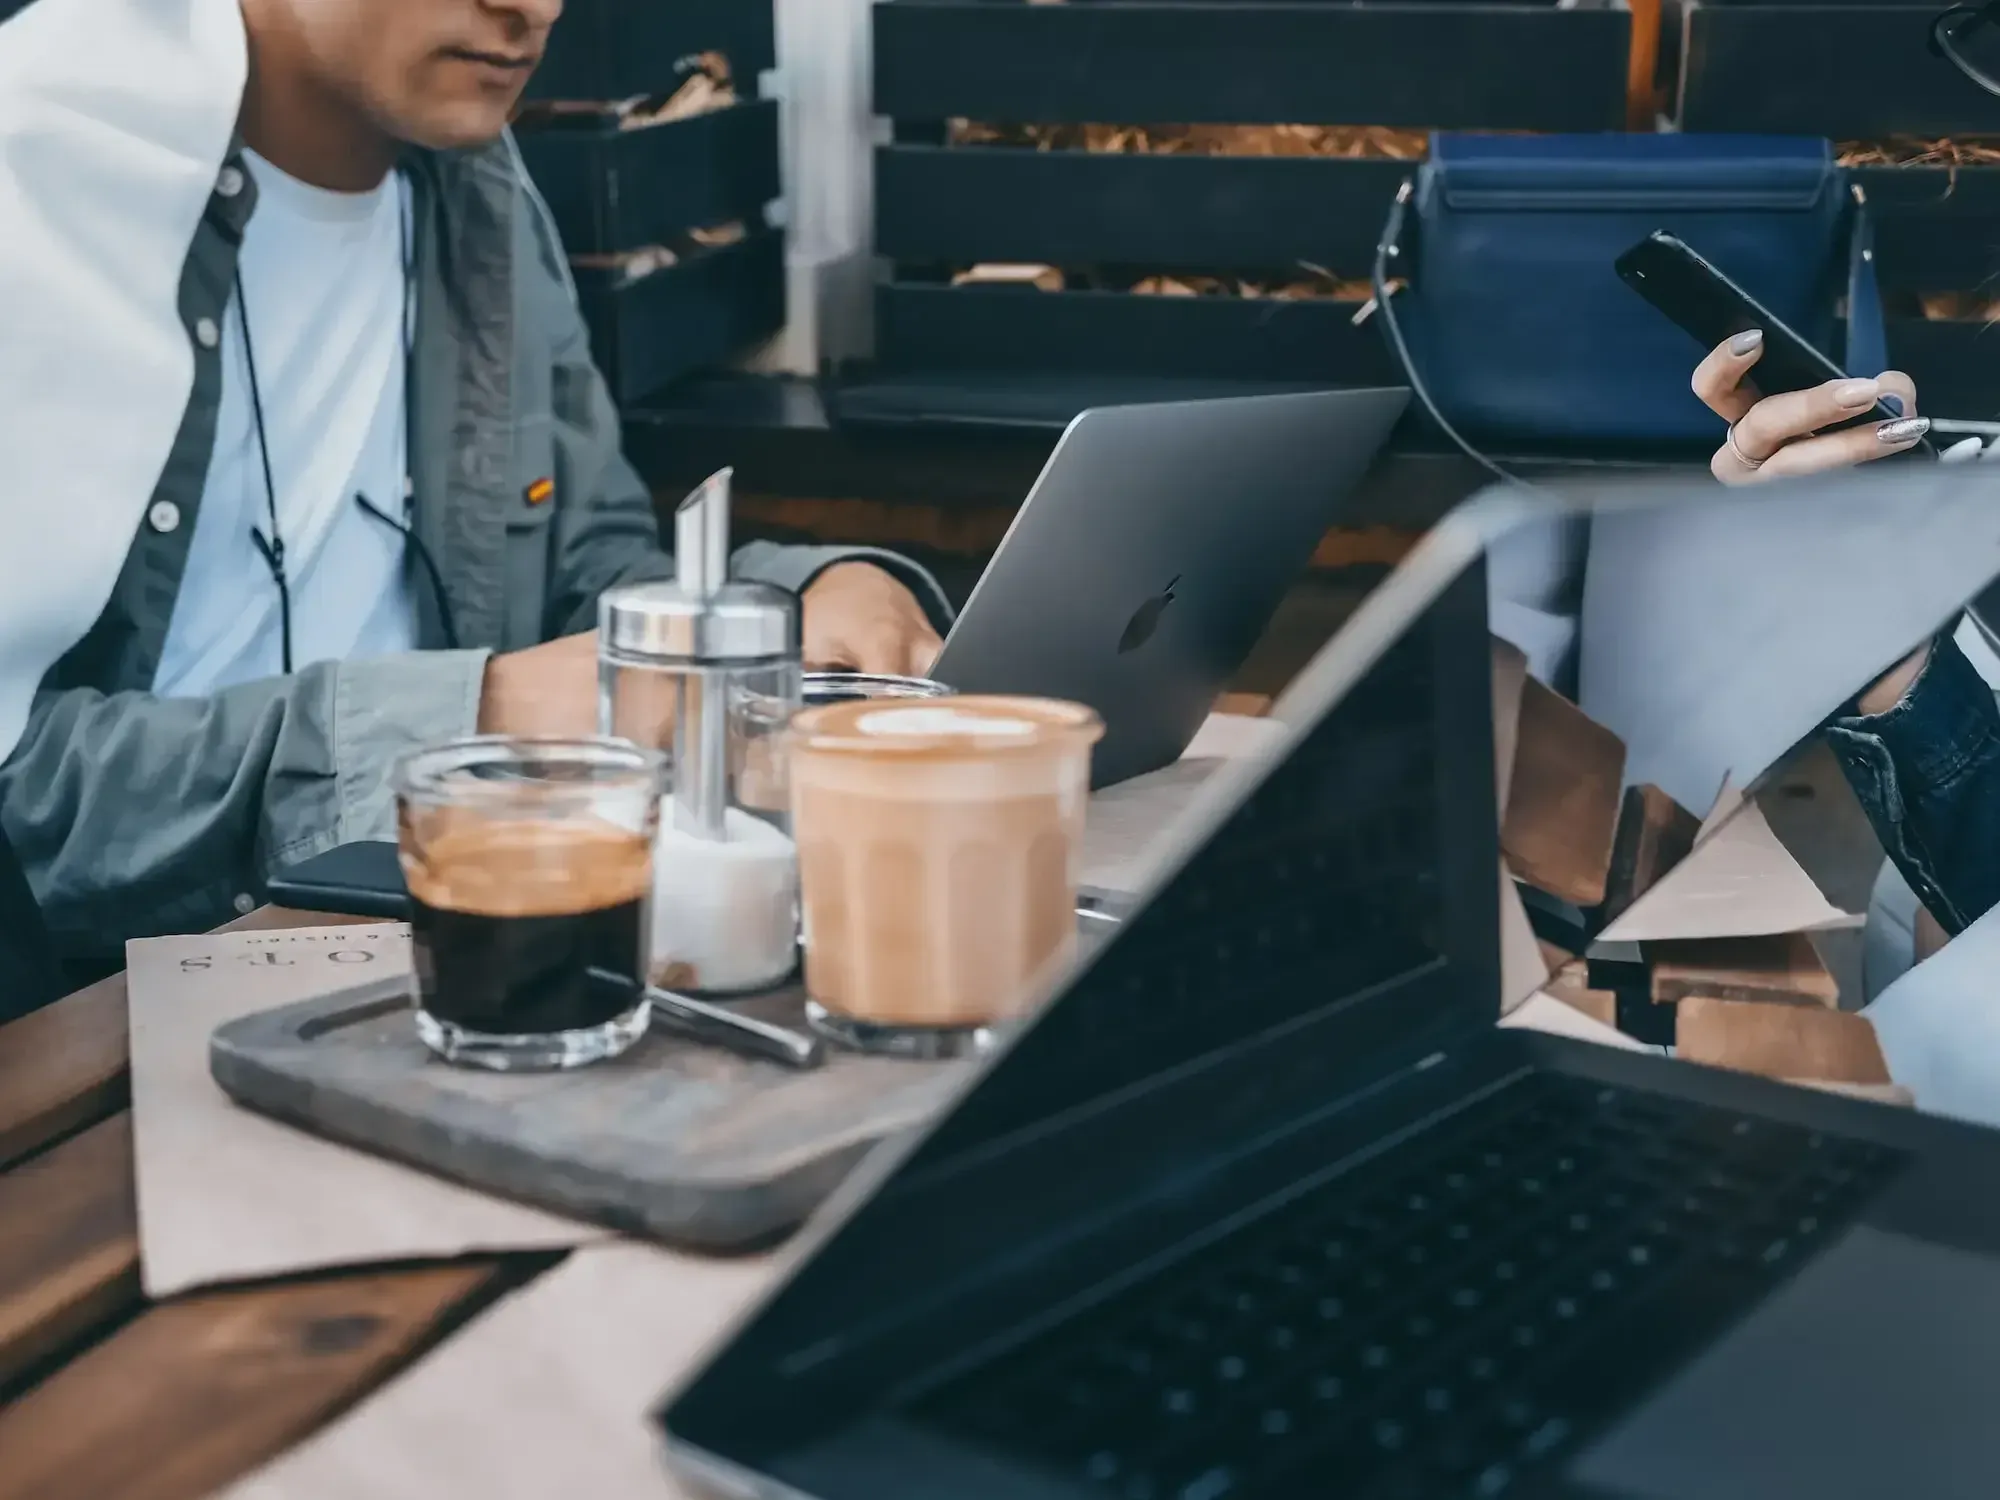 Drei Leute arbeiten draußen an ihren Laptops, zwei Tassen Kaffee und Zucker stehen auf dem Holztisch.